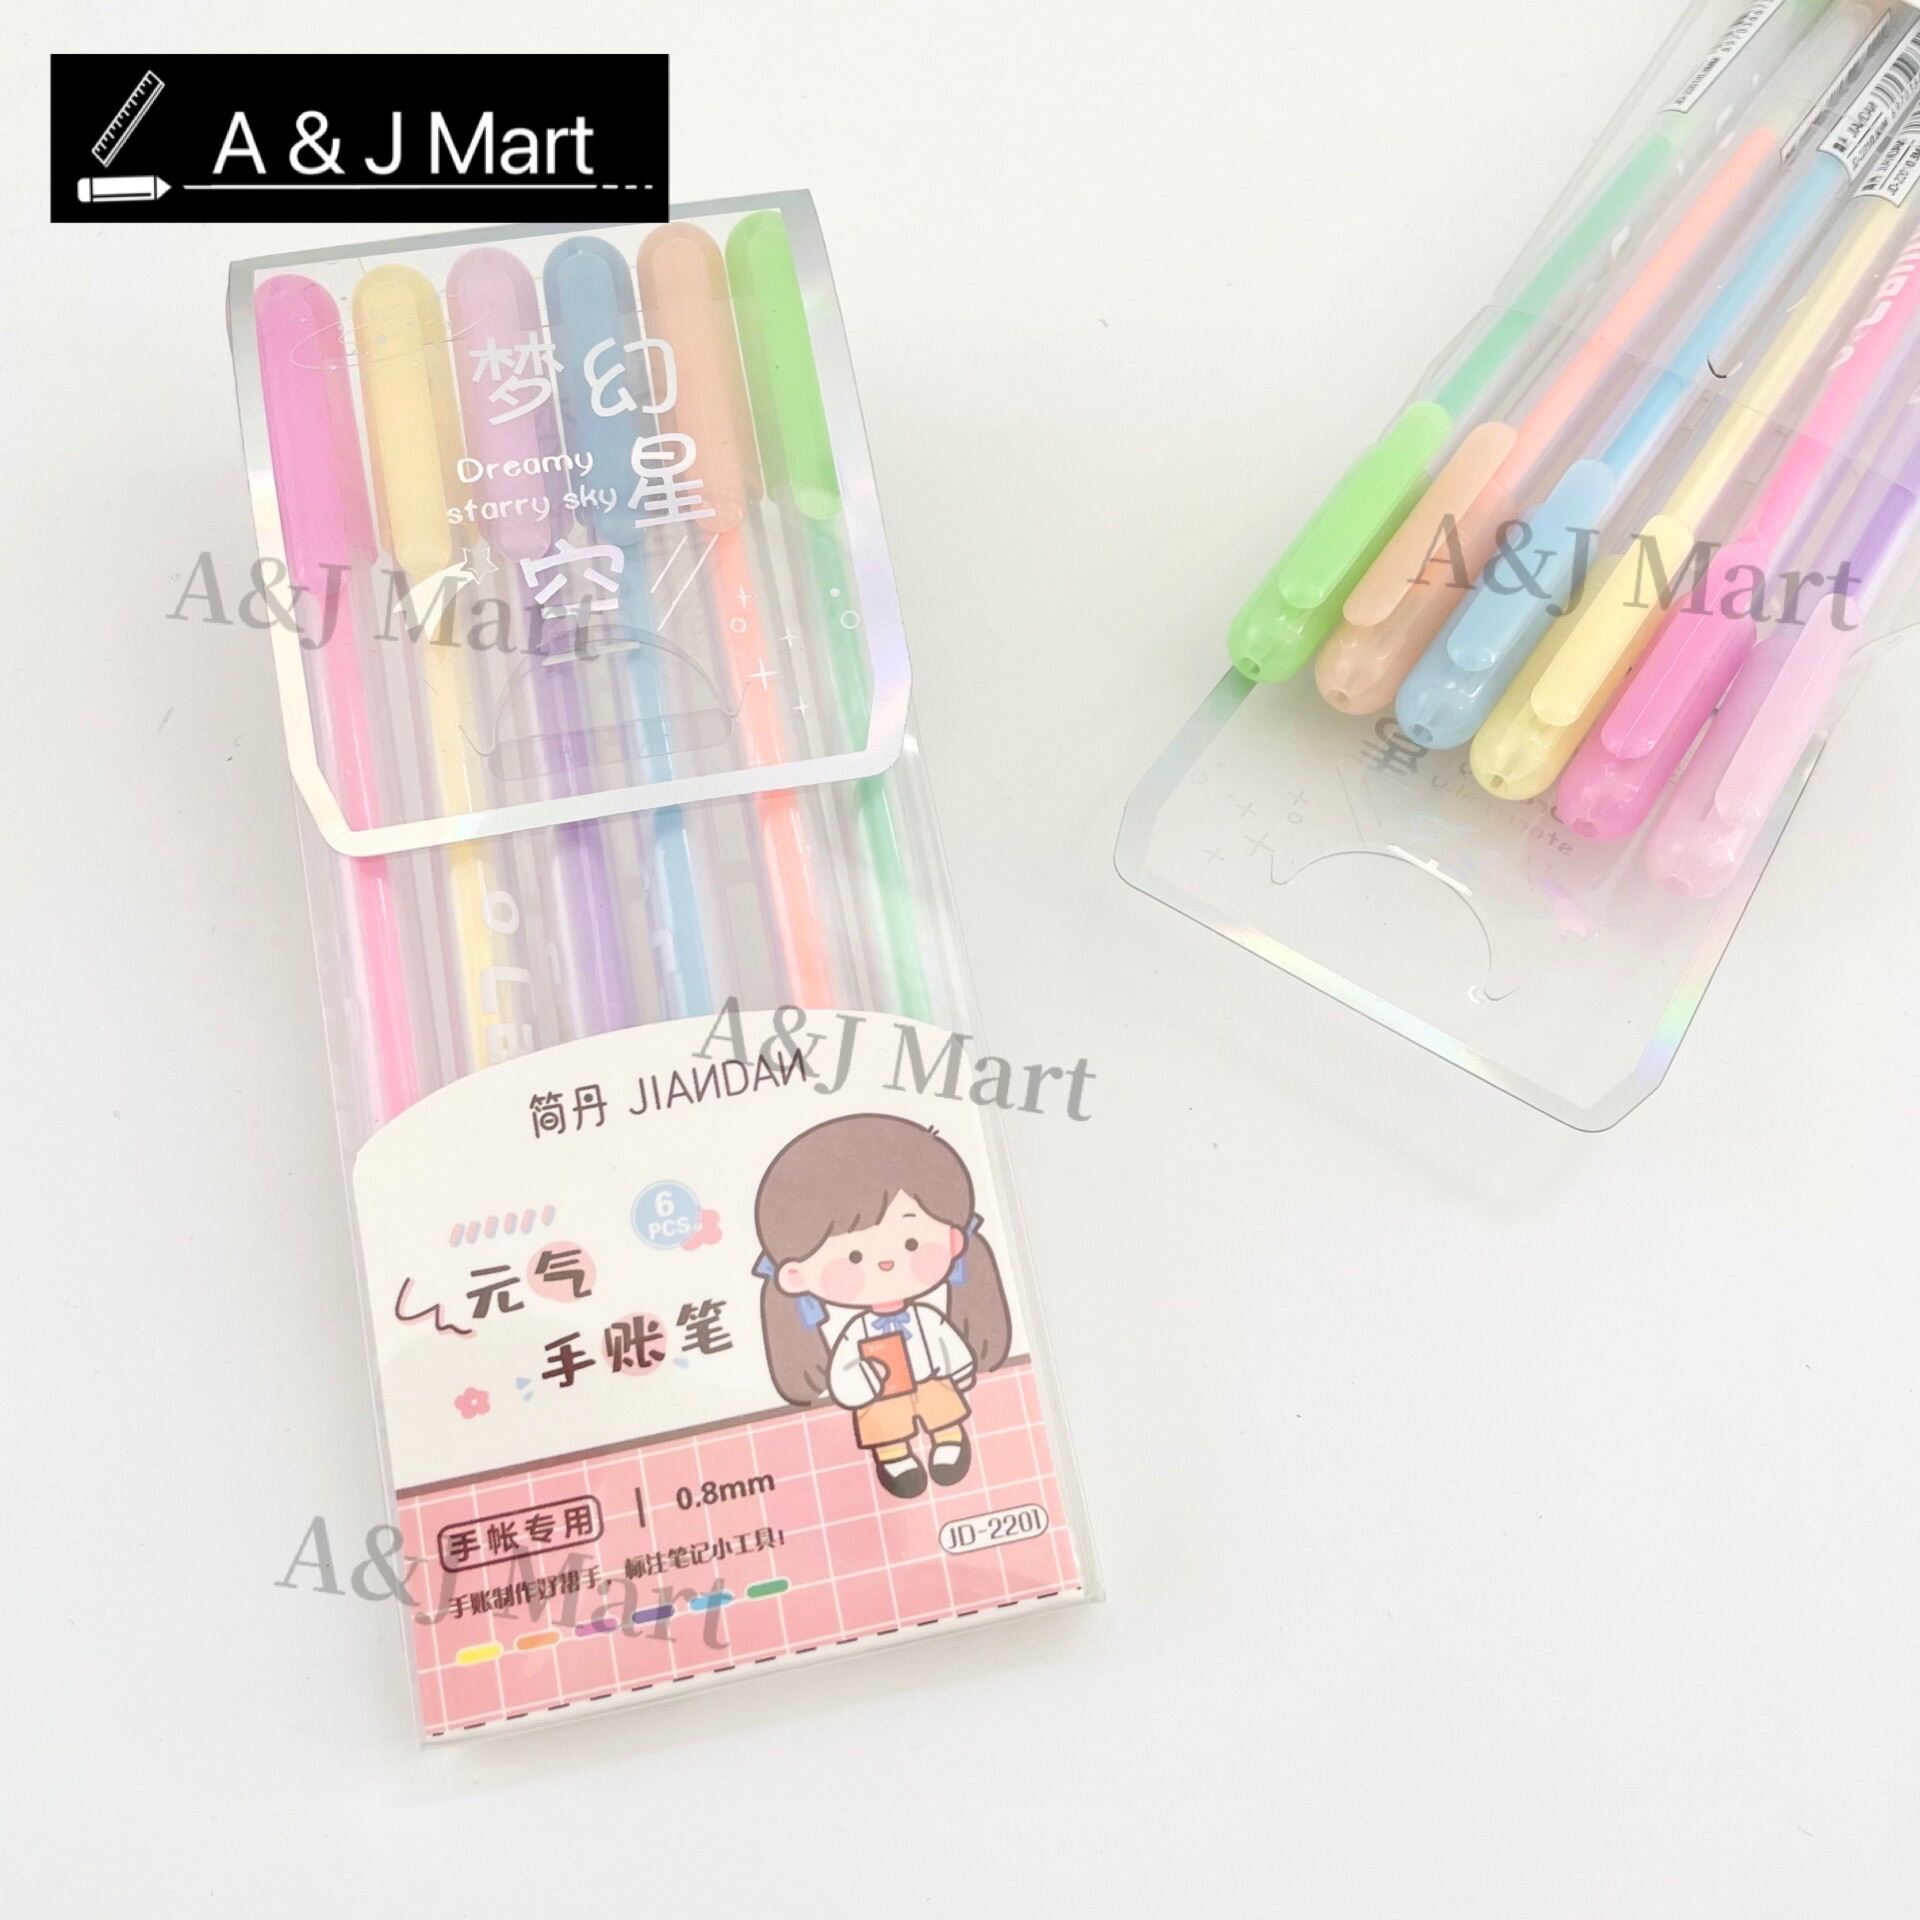 6pcs/ set Cute Candy Colour Pen Set 0.8mm/ 糖果色手帐笔/荧光笔 (1 set)